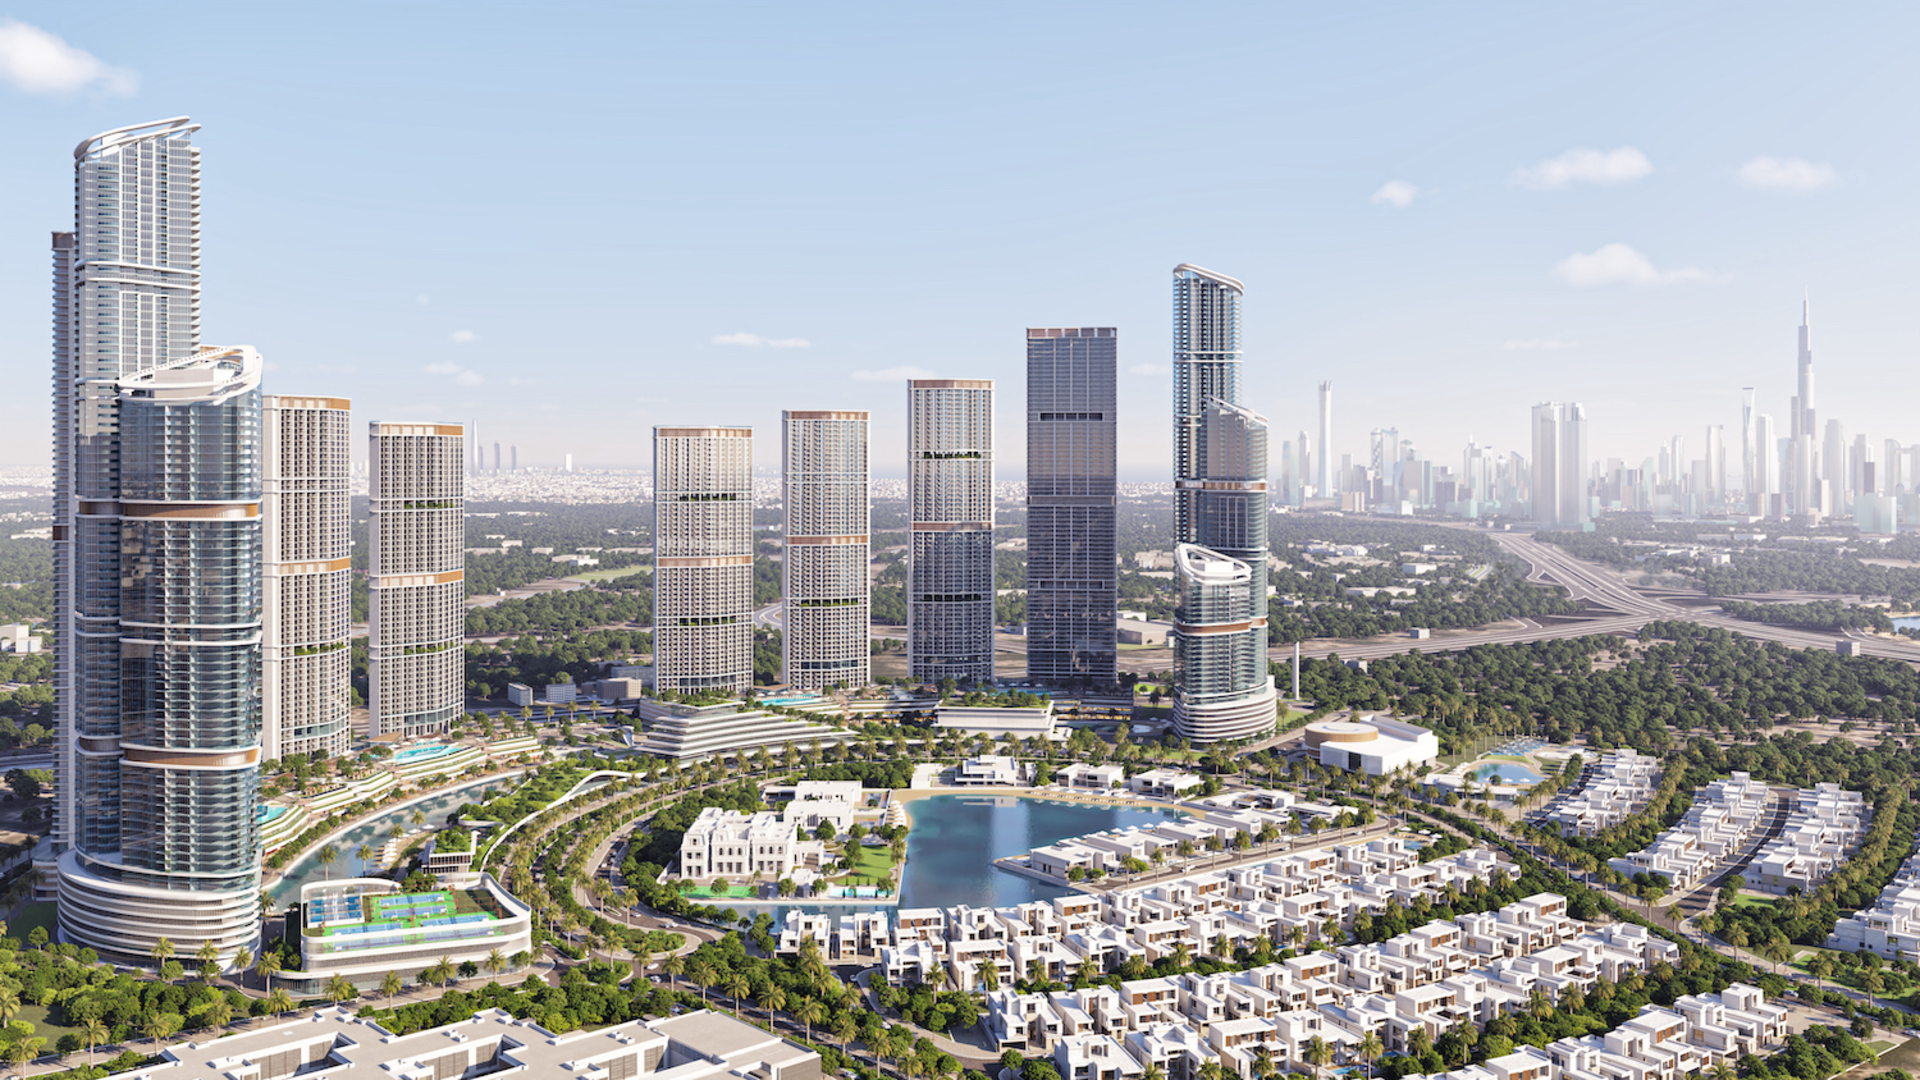 Уникальный жилой комплекс-небоскрёб из роскошных апартаментов и вилл на окраине центра Дубая